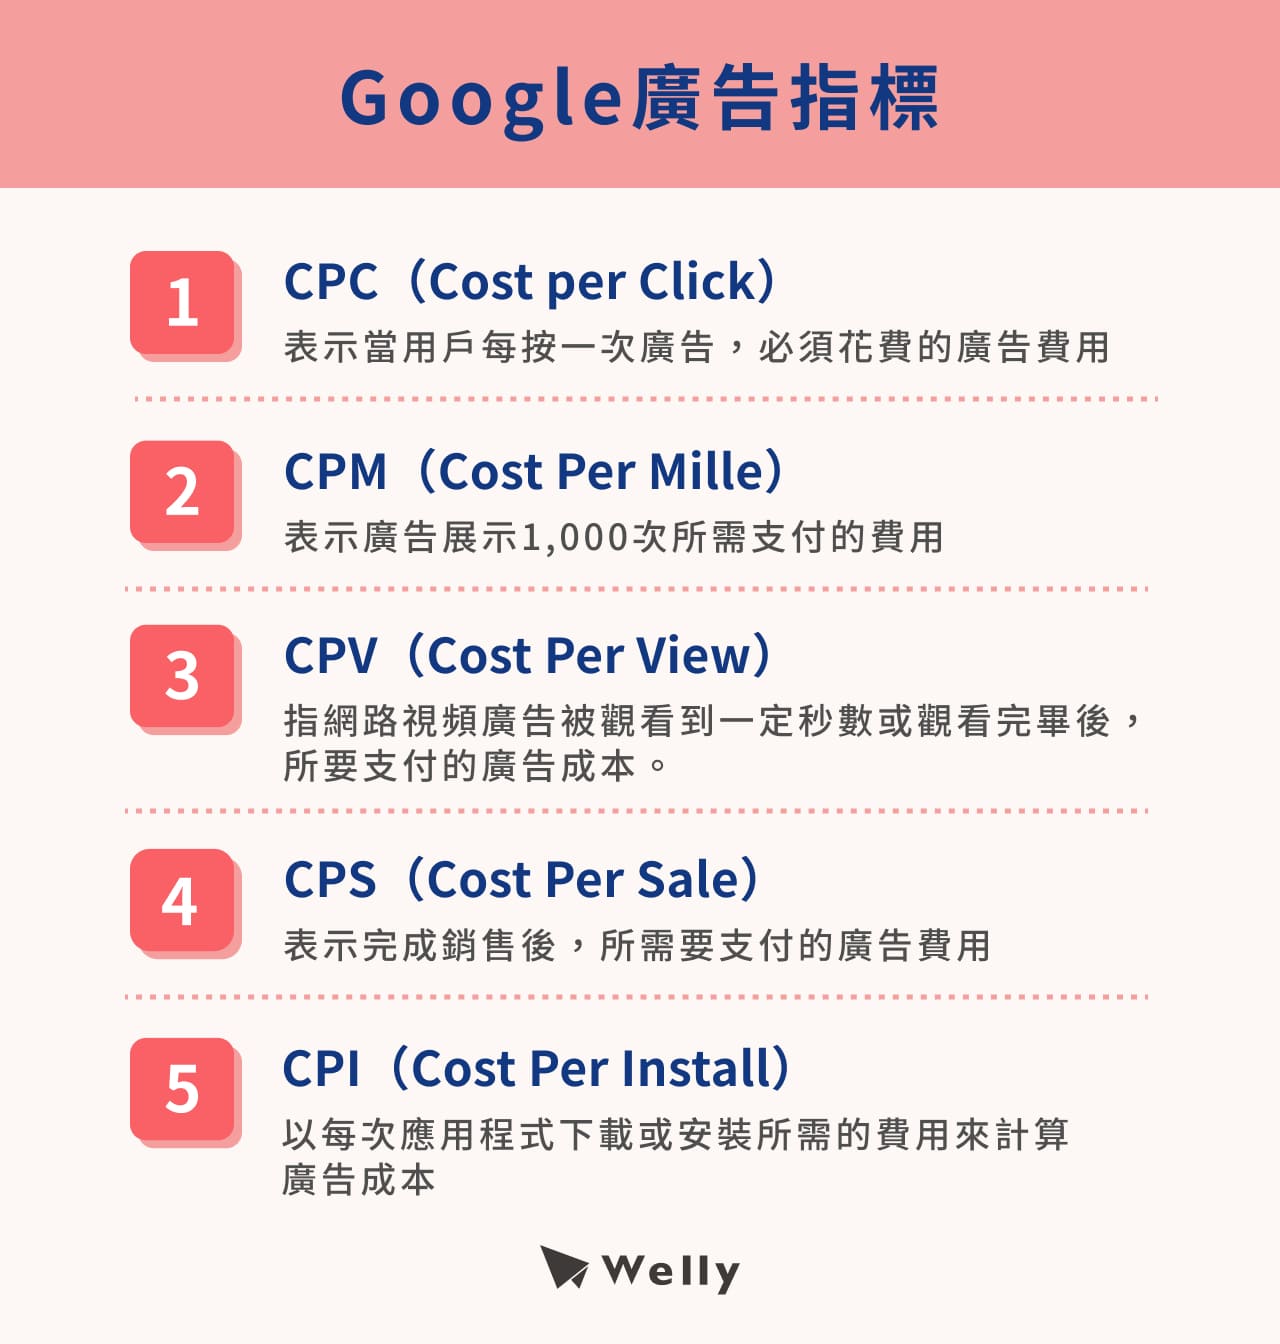 CPC（Cost per Click）、CPM（Cost Per Mille）、CPV（Cost Per View）、CPS（Cost Per Sale）、CPI（Cost Per Install）